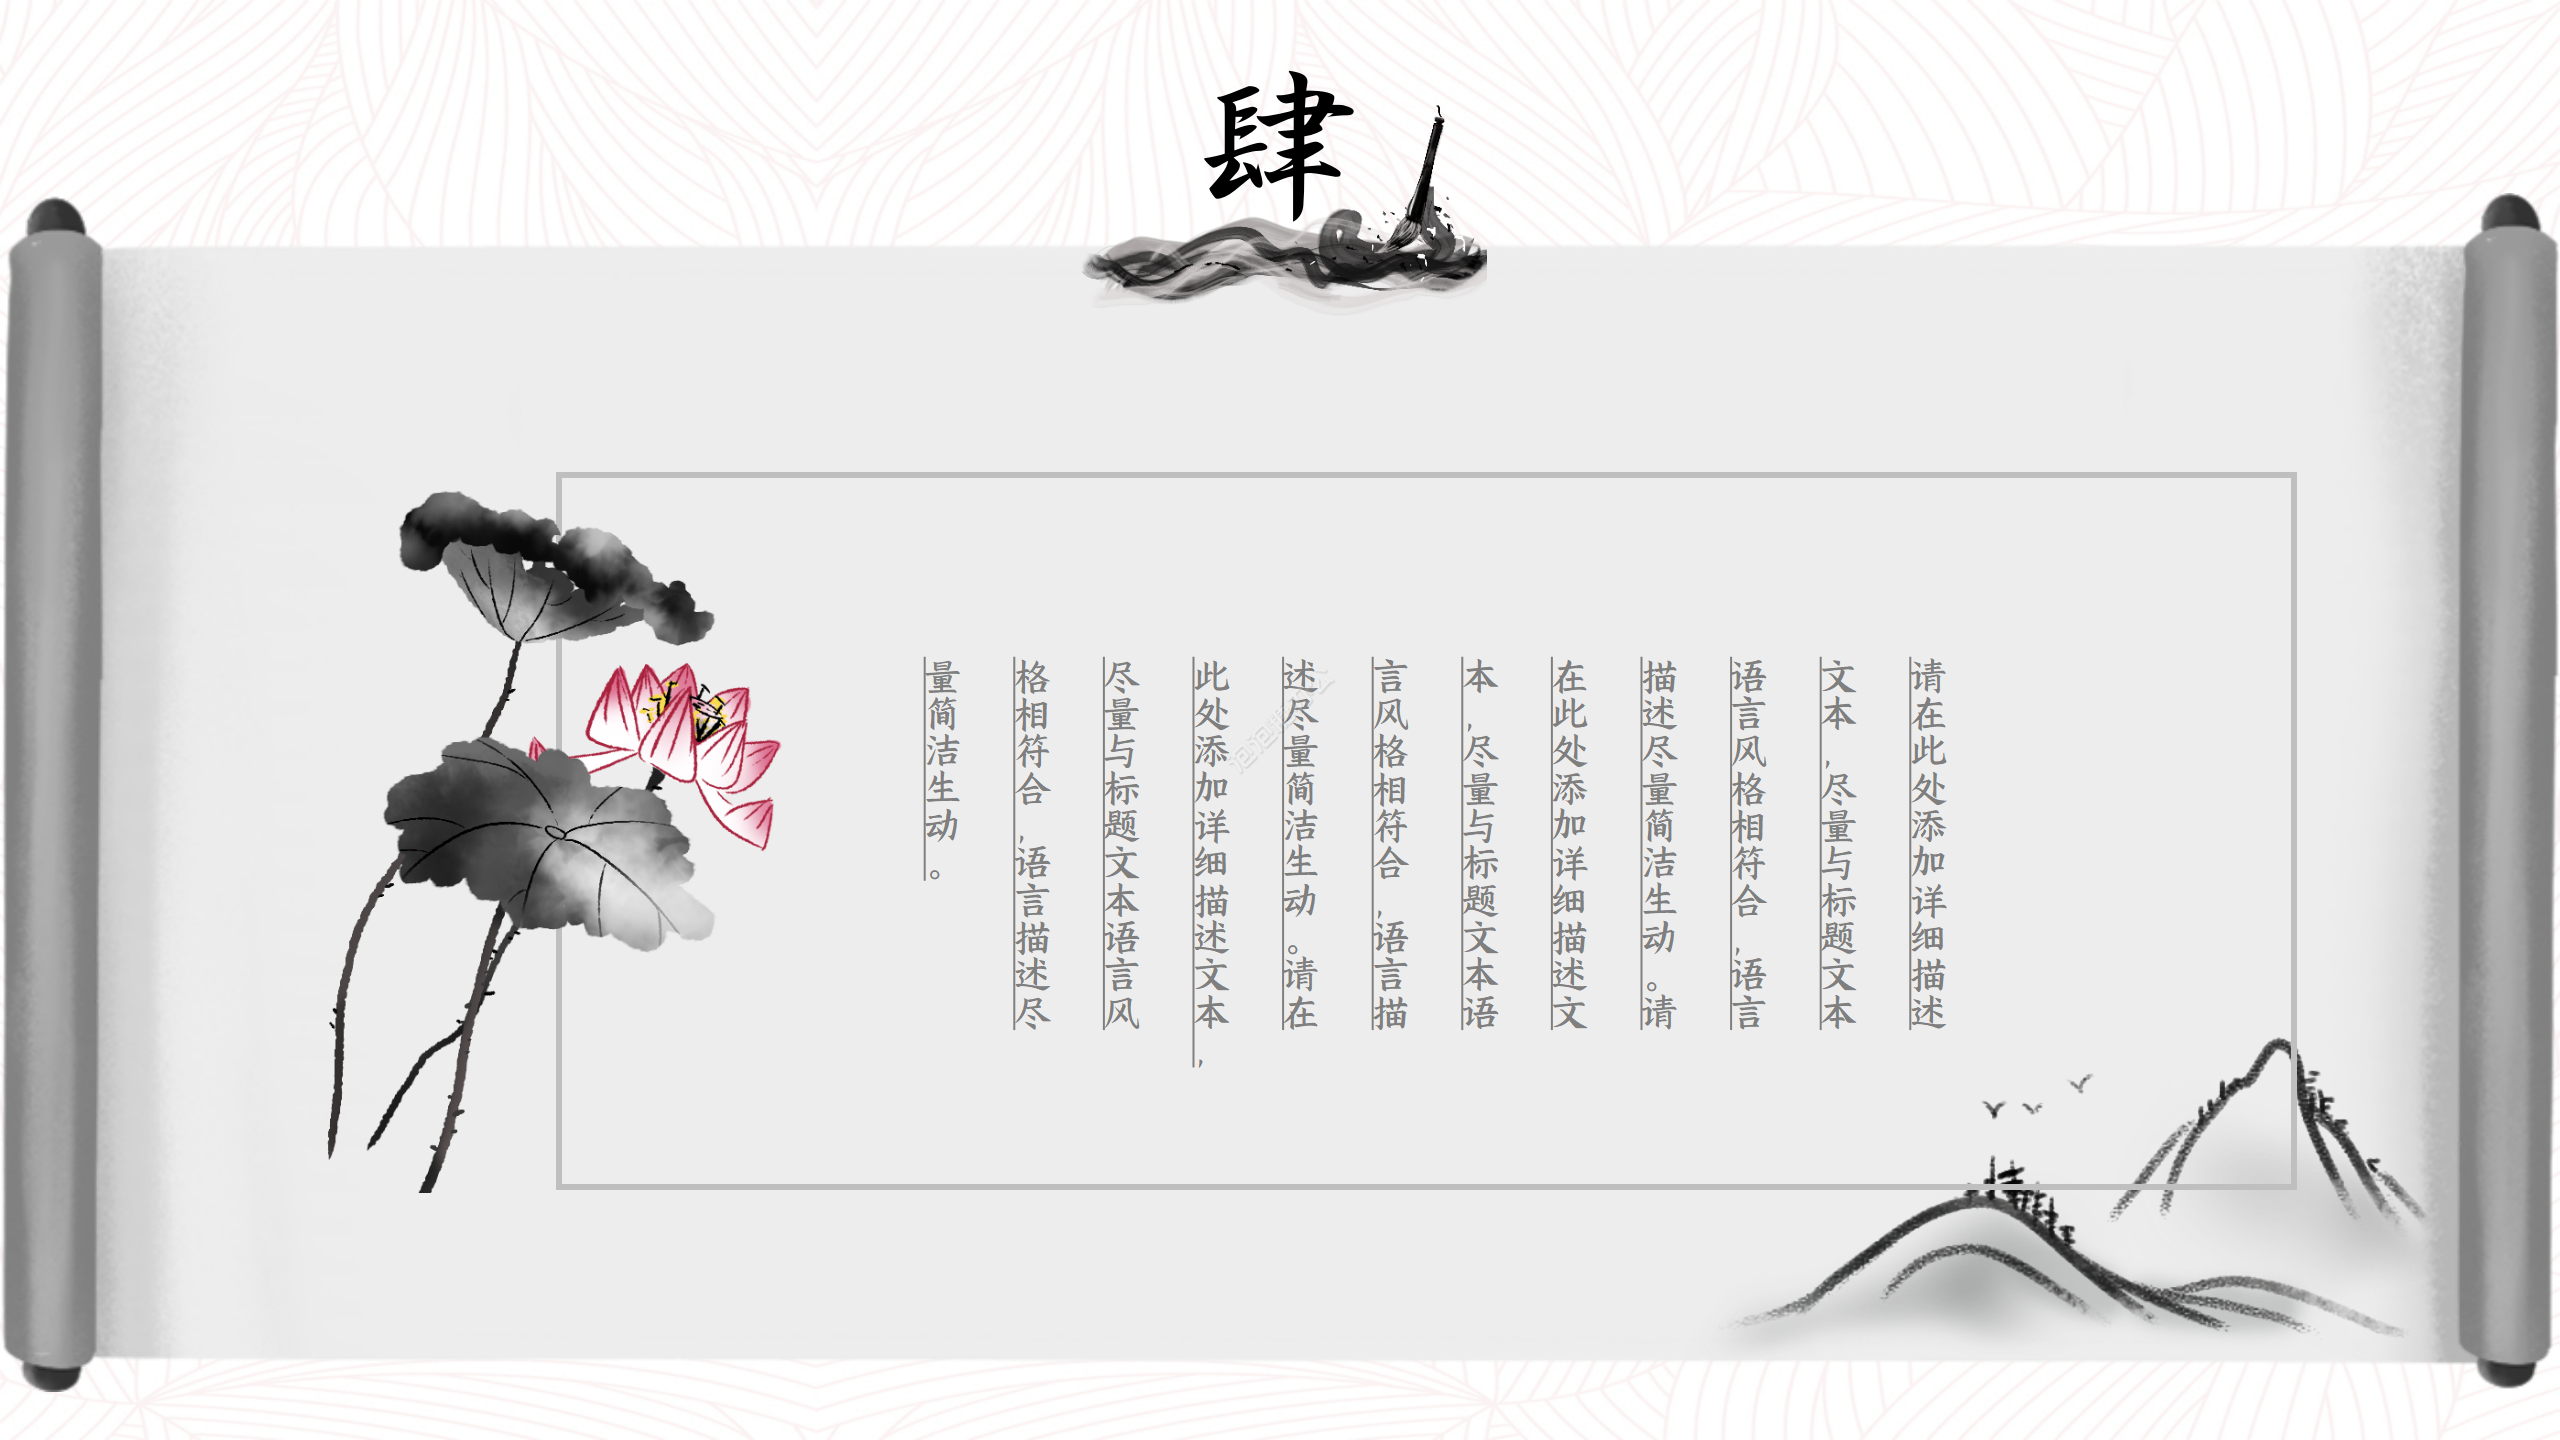 古典水墨画中国风PPT模板